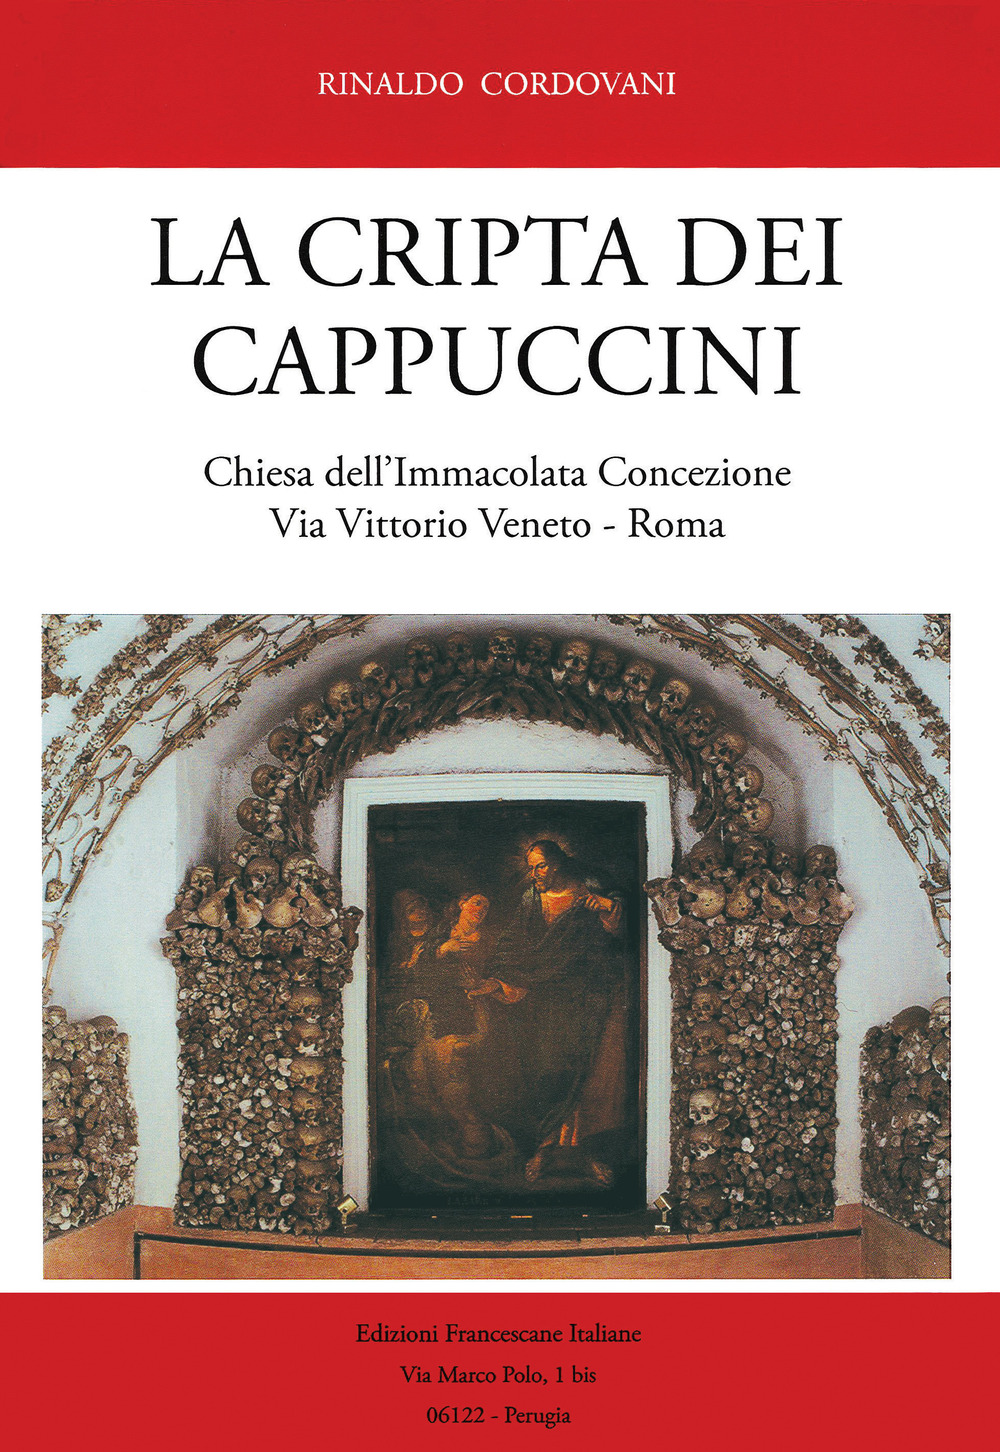 La Cripta dei Cappuccini. Chiesa dell'Immacolata Concezione Via Vittorio Veneto, Roma